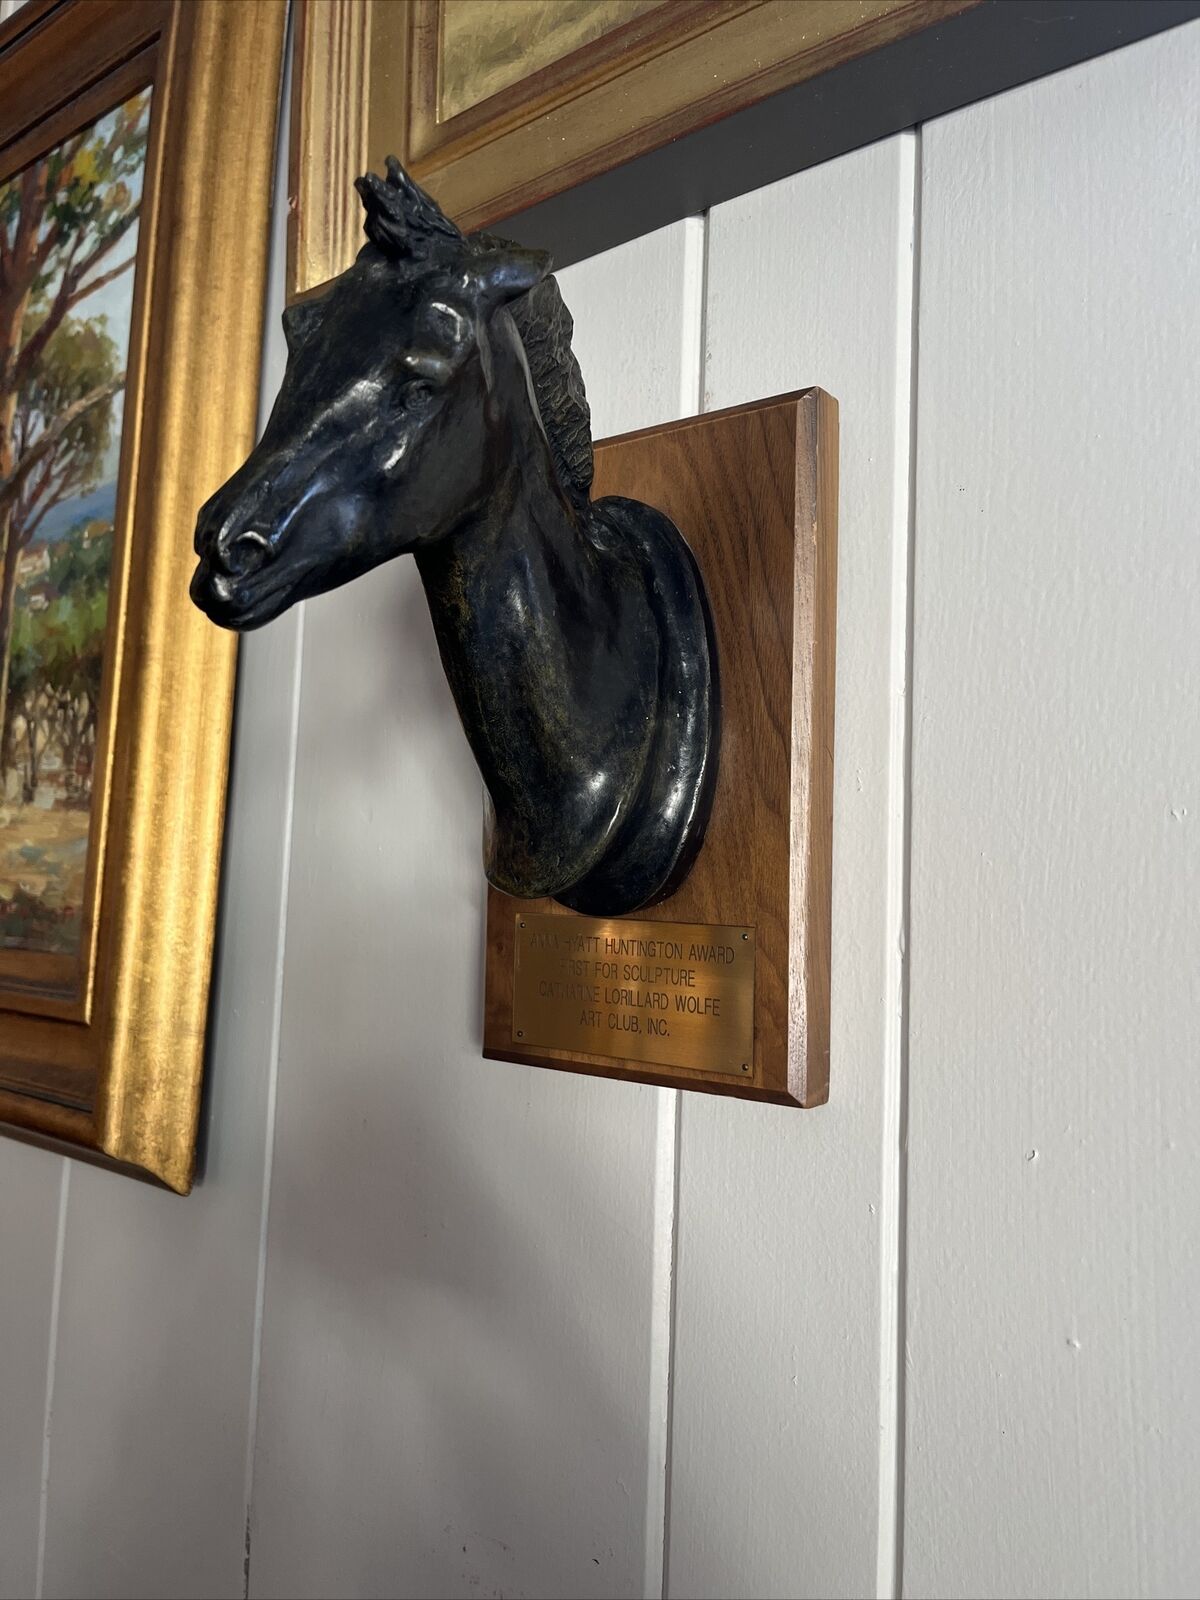 Beautiful Anna Hyatt Huntington Bronze Sculpture Award Horse Mounted On Wood.